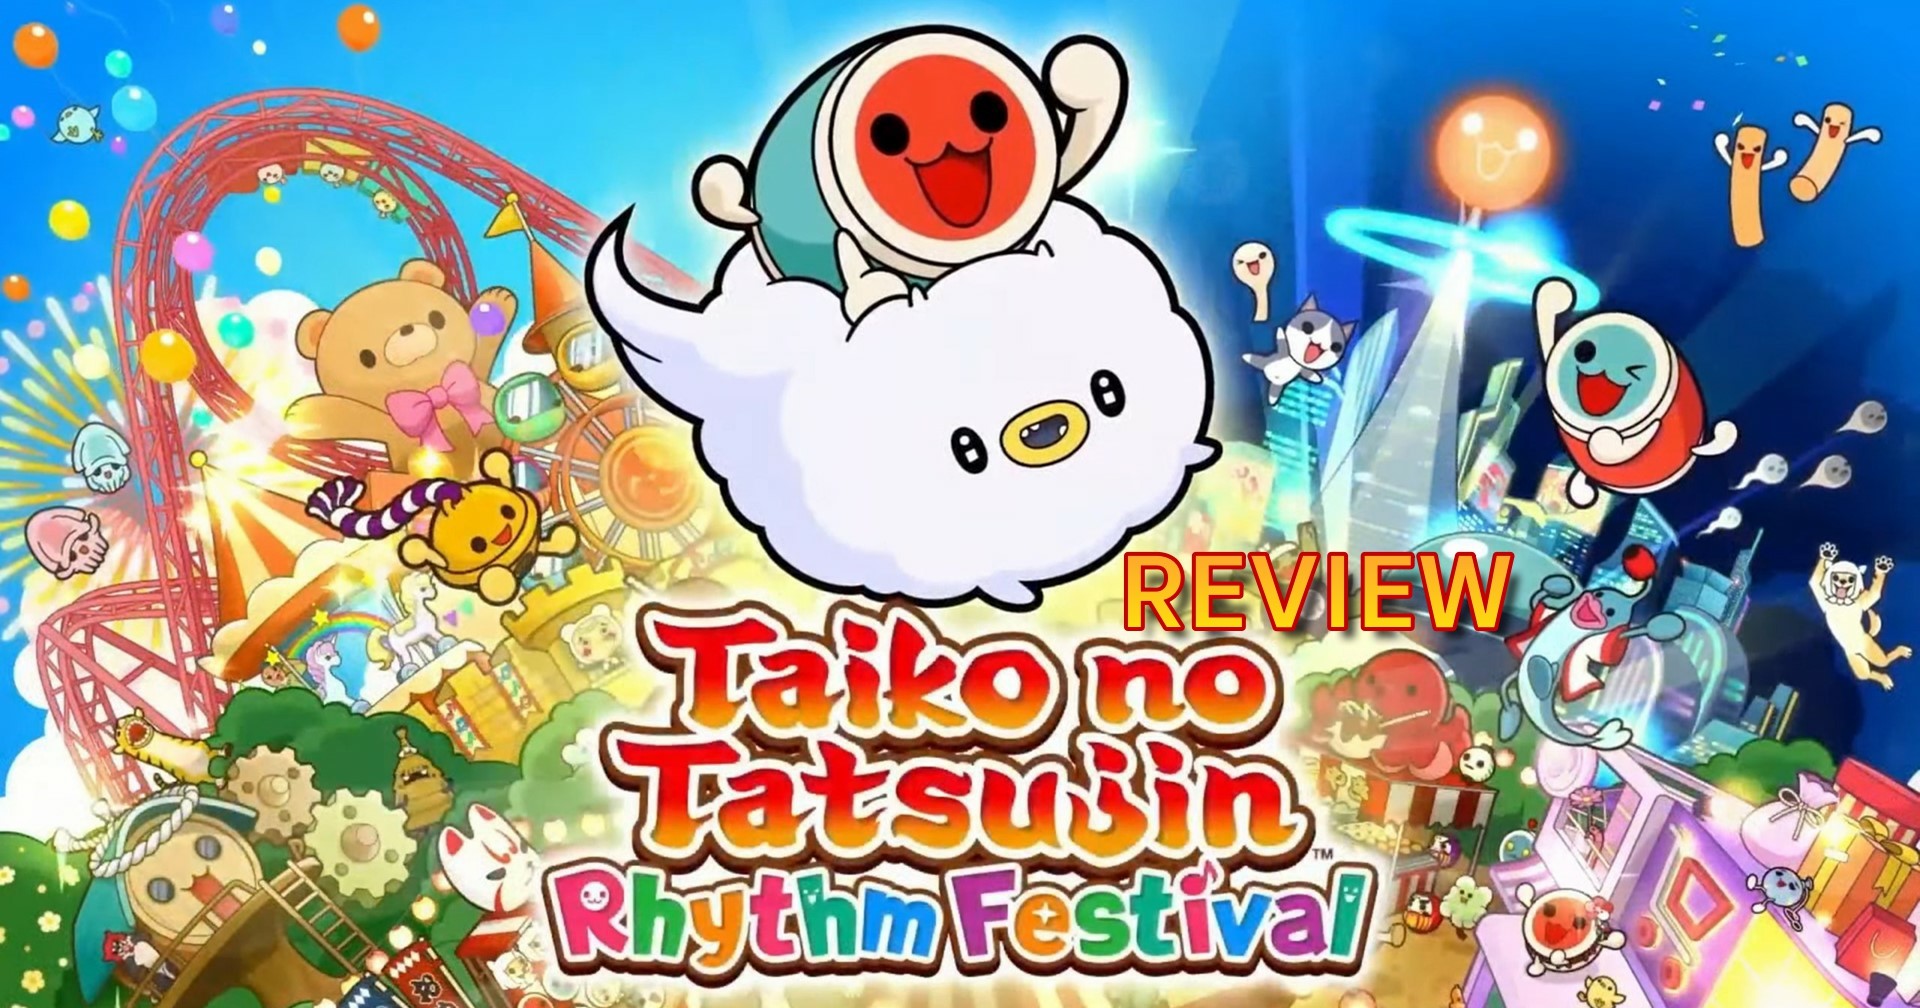 รีวิวเกม Taiko no Tatsujin Rhythm Festival ตีกลองที่สนุกดีแต่ไม่มีอะไรใหม่